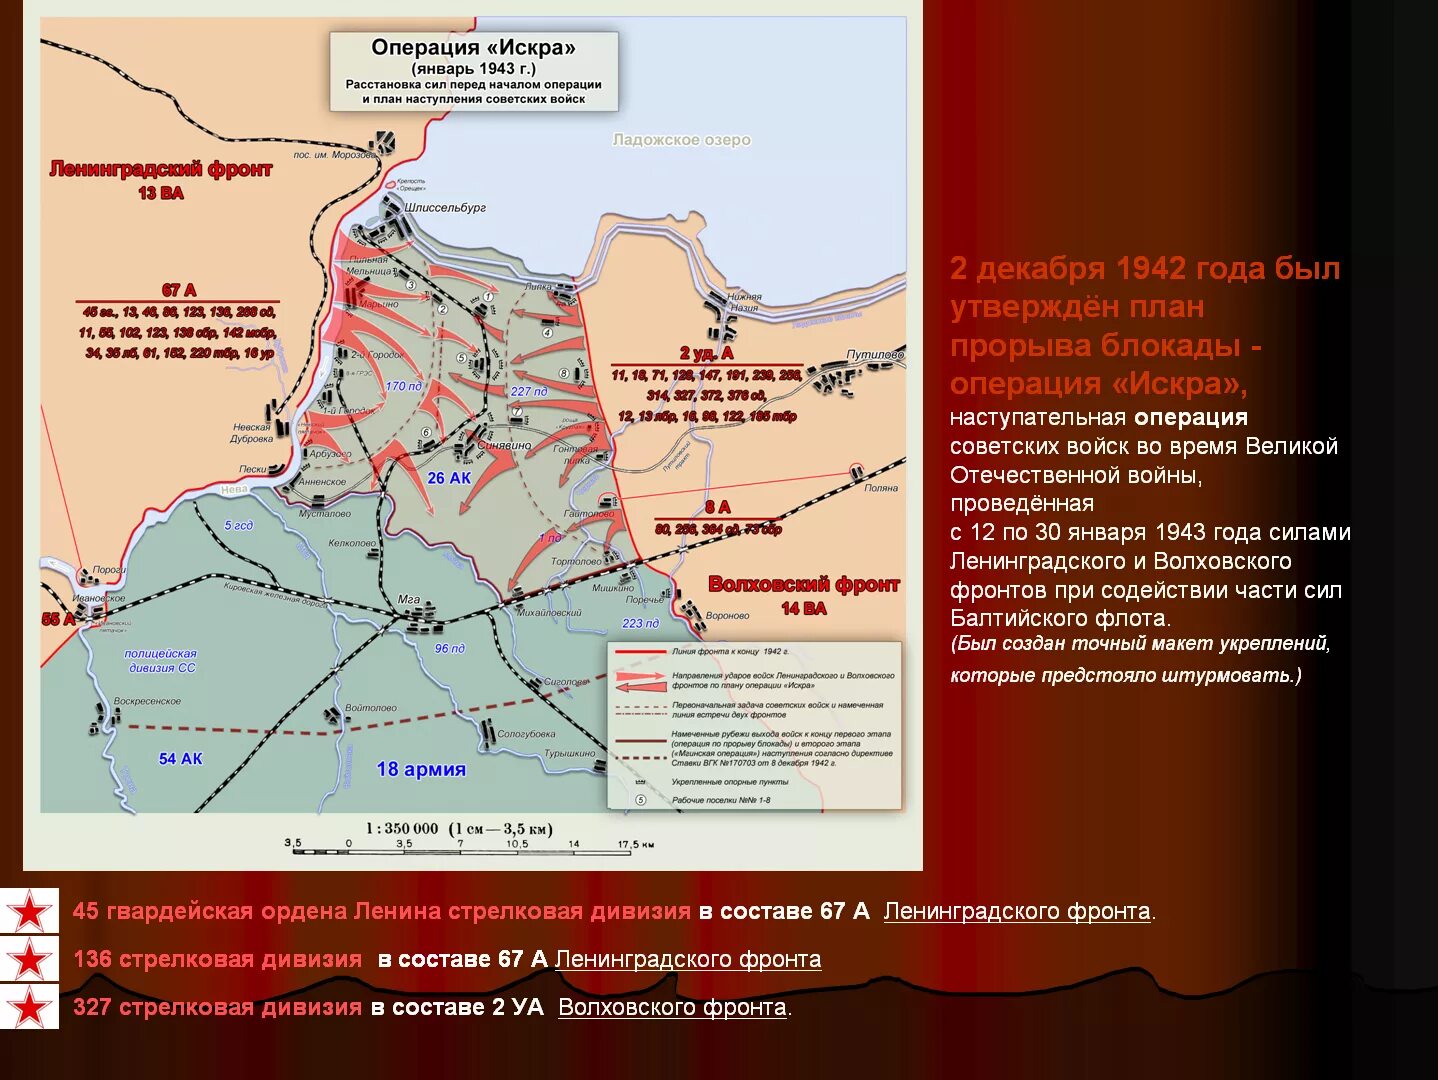 Прорыв блокады Ленинграда (12–30 января 1943). Карта прорыва блокады Ленинграда в 1943 году. Кодовое название операции по освобождению